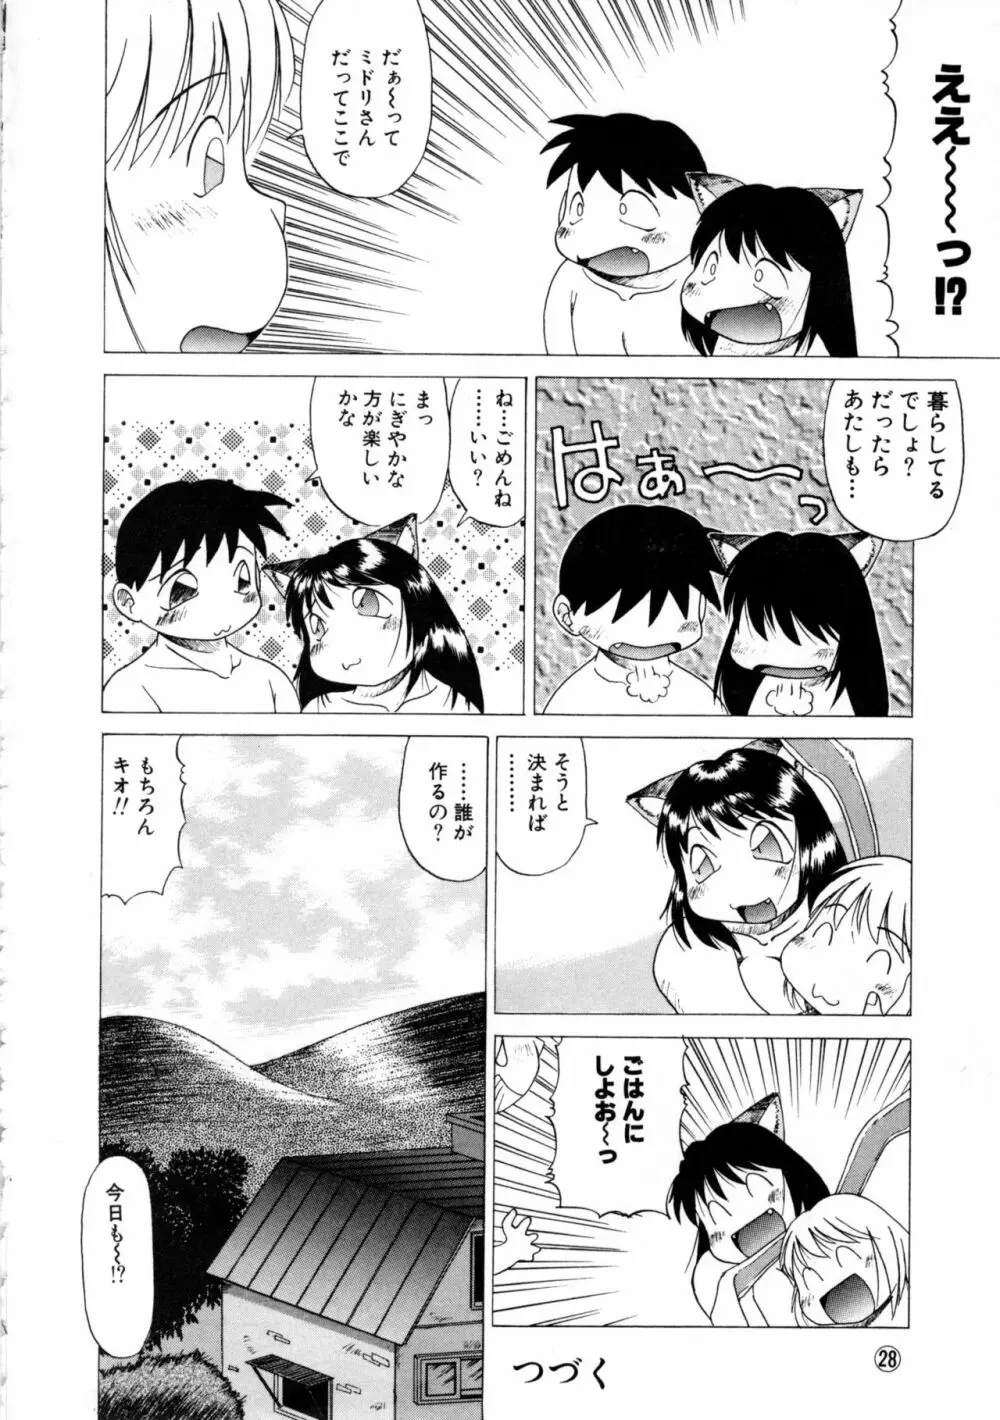 COMICねね No.6 31ページ